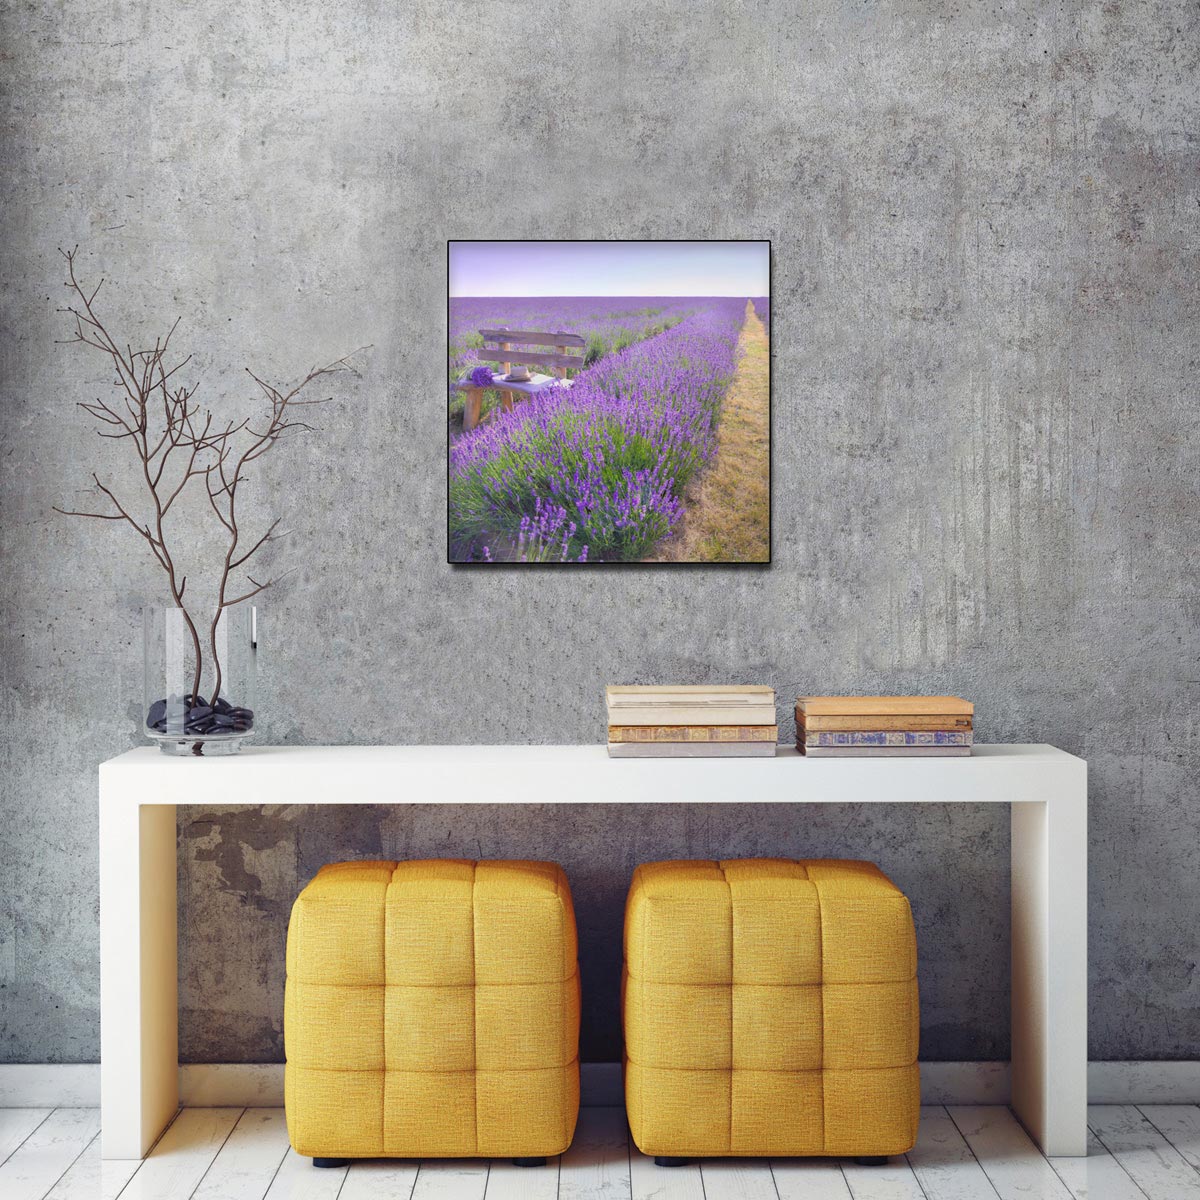 levandeo Glasbild 30x30cm Wandbild Glas Lavendel Feldweg Landschaft Deko